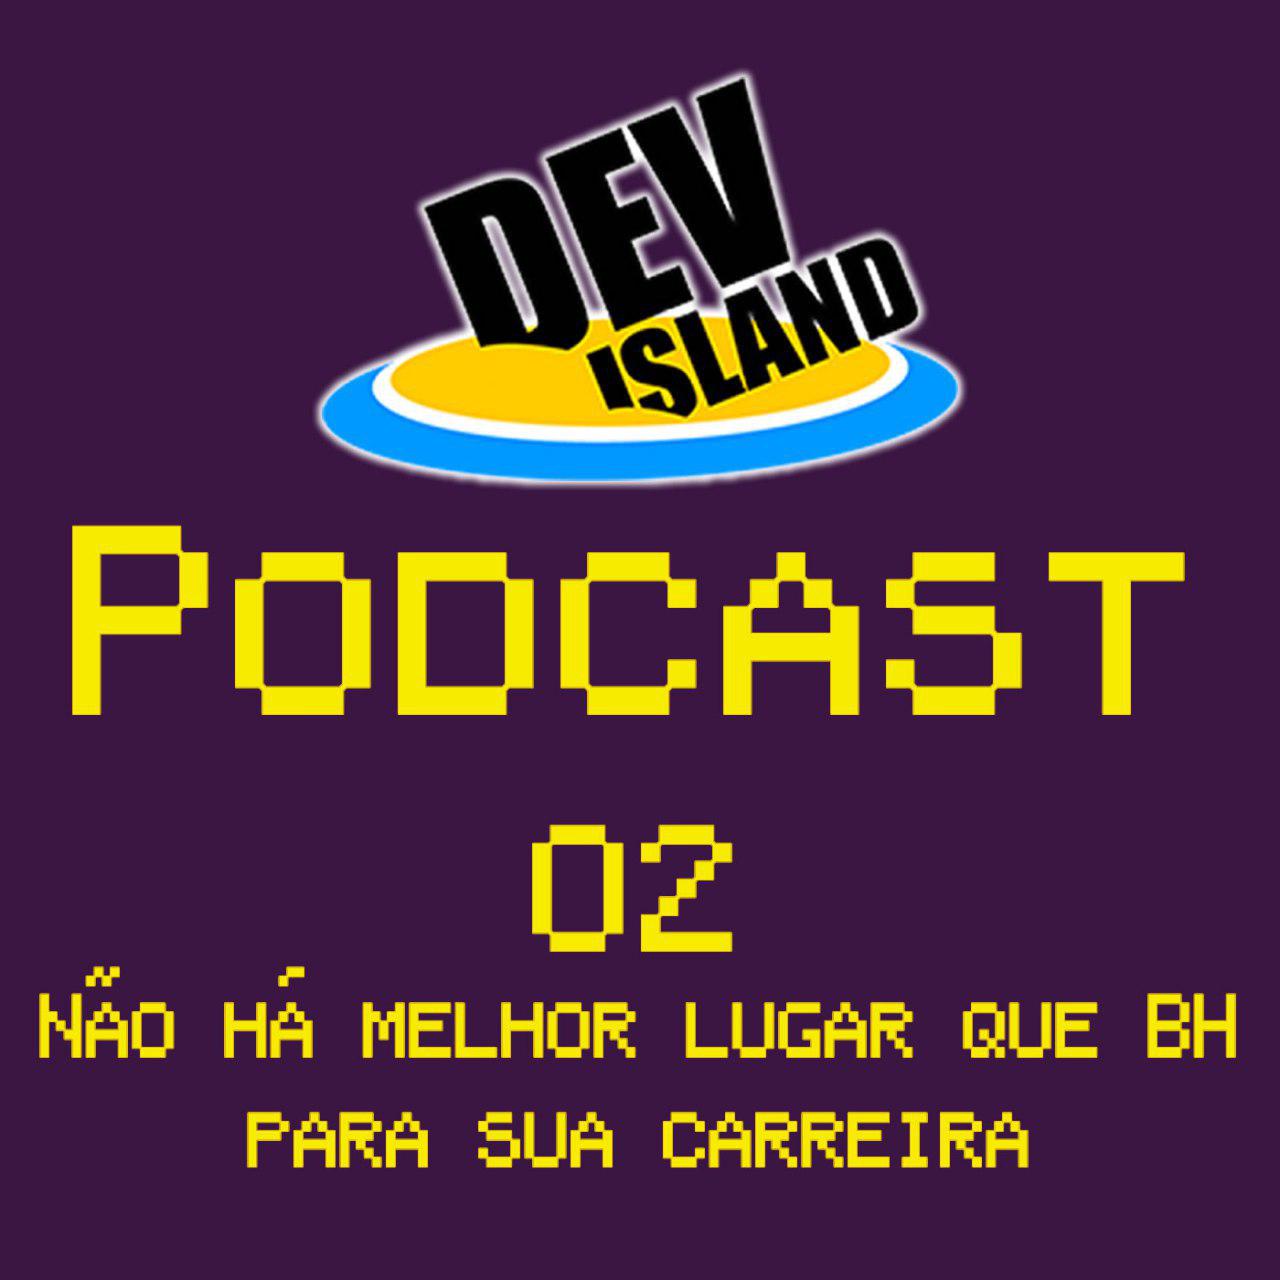 Episódio 2 do DevIsland Podcast - Não há lugar melhor que BH para sua carreira